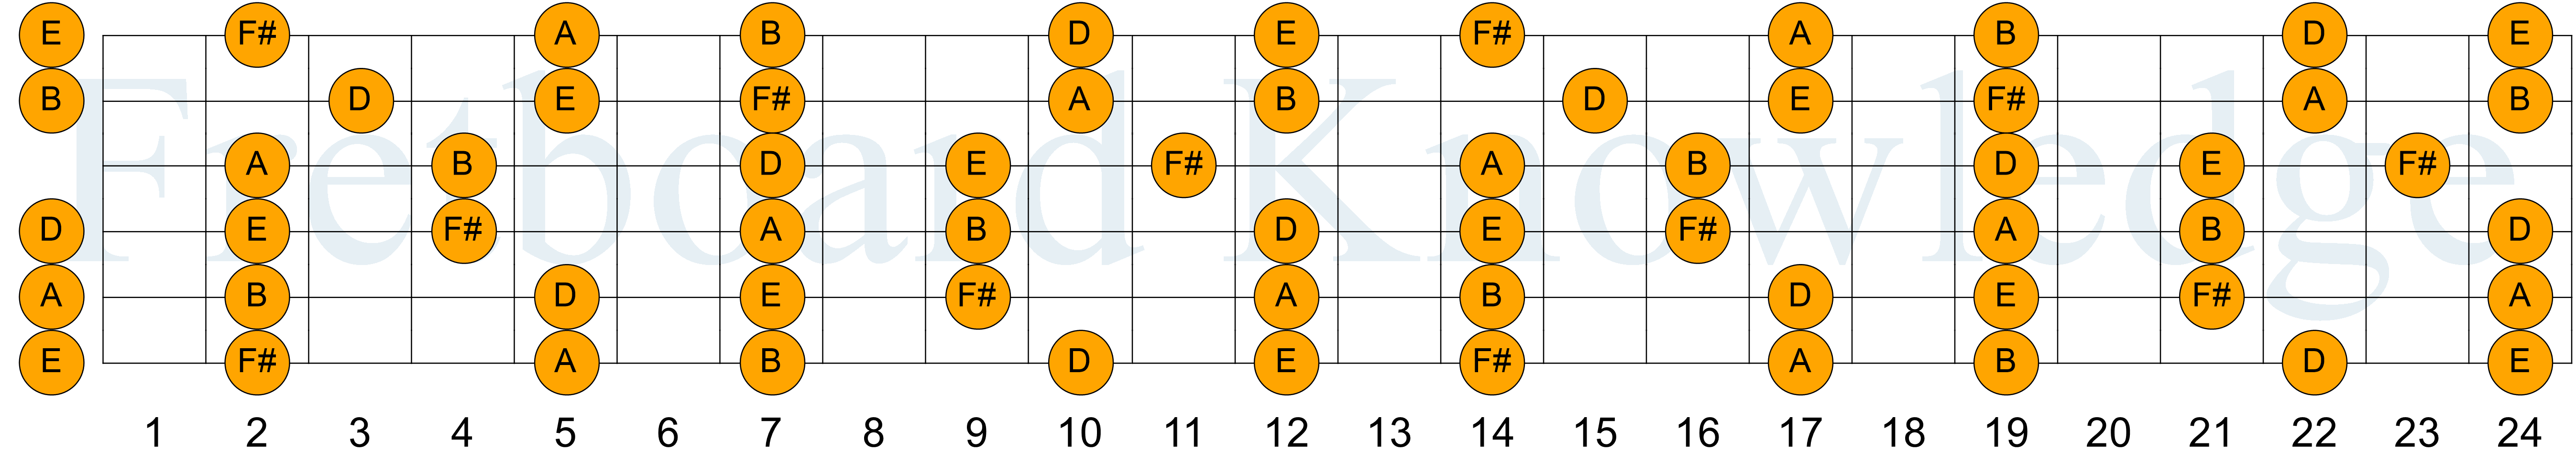 Bm Pentatonic Guitar Fretboard Diagram